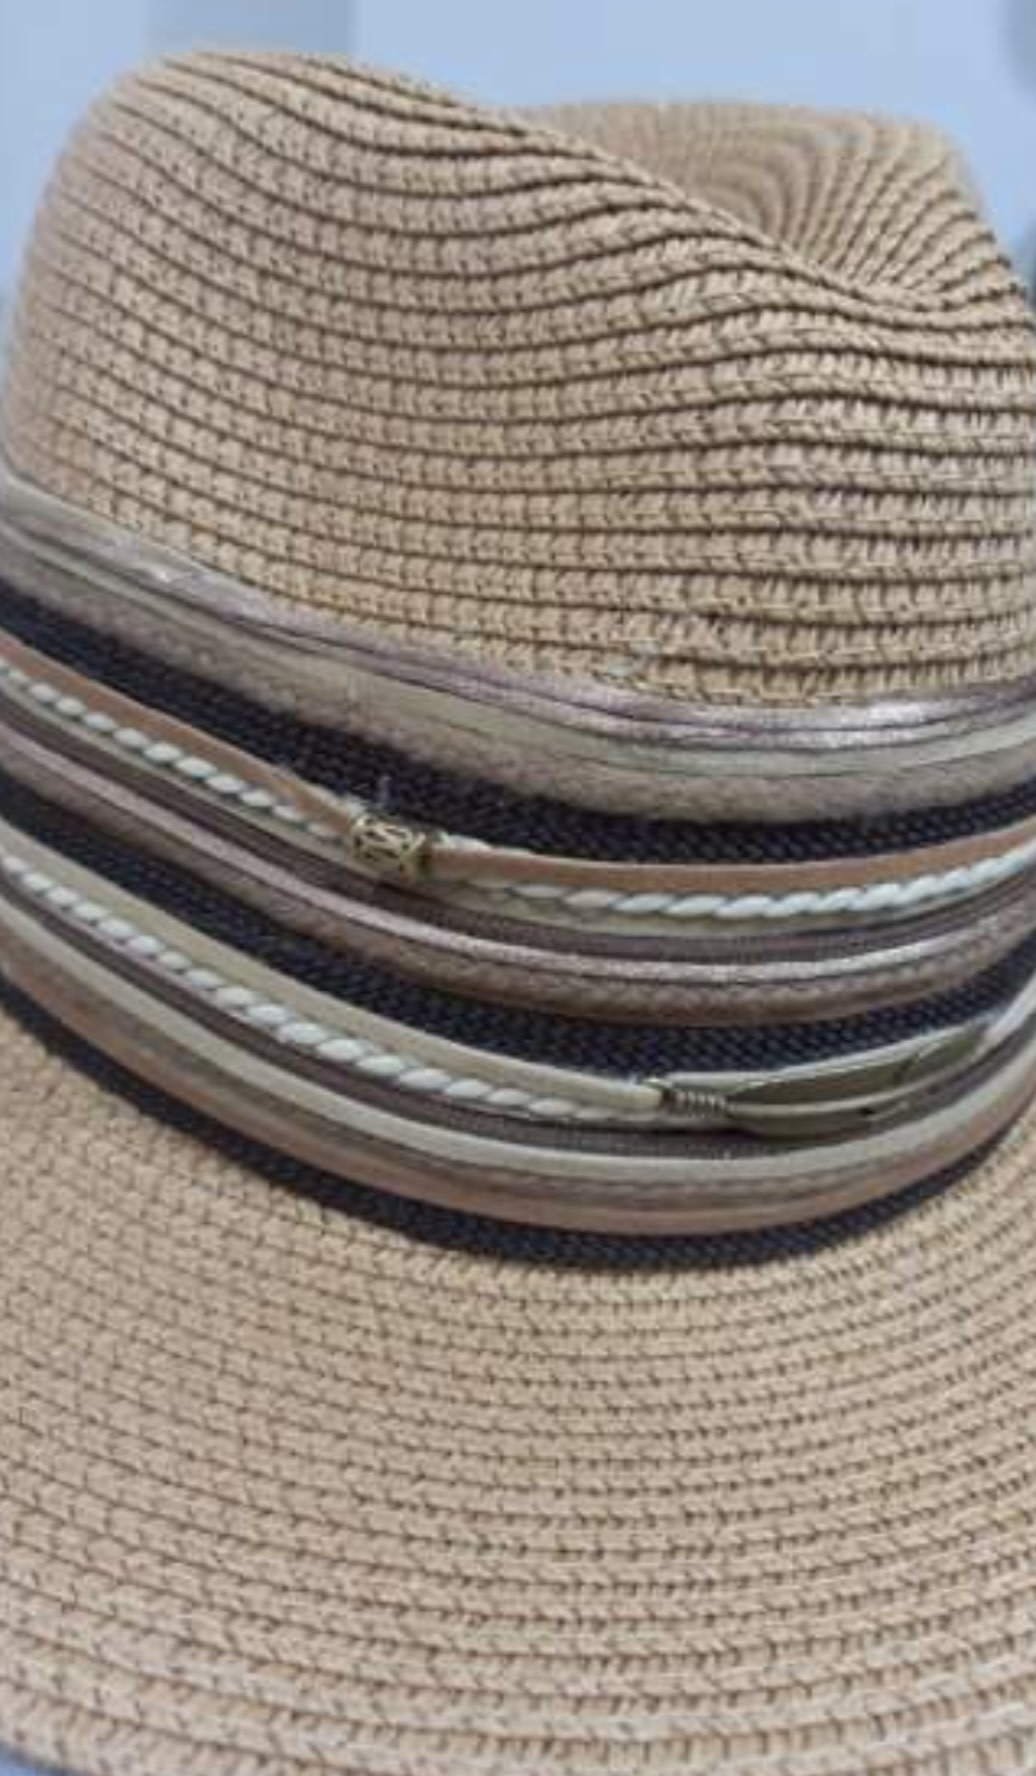 Bits & Pieces Panama Hat